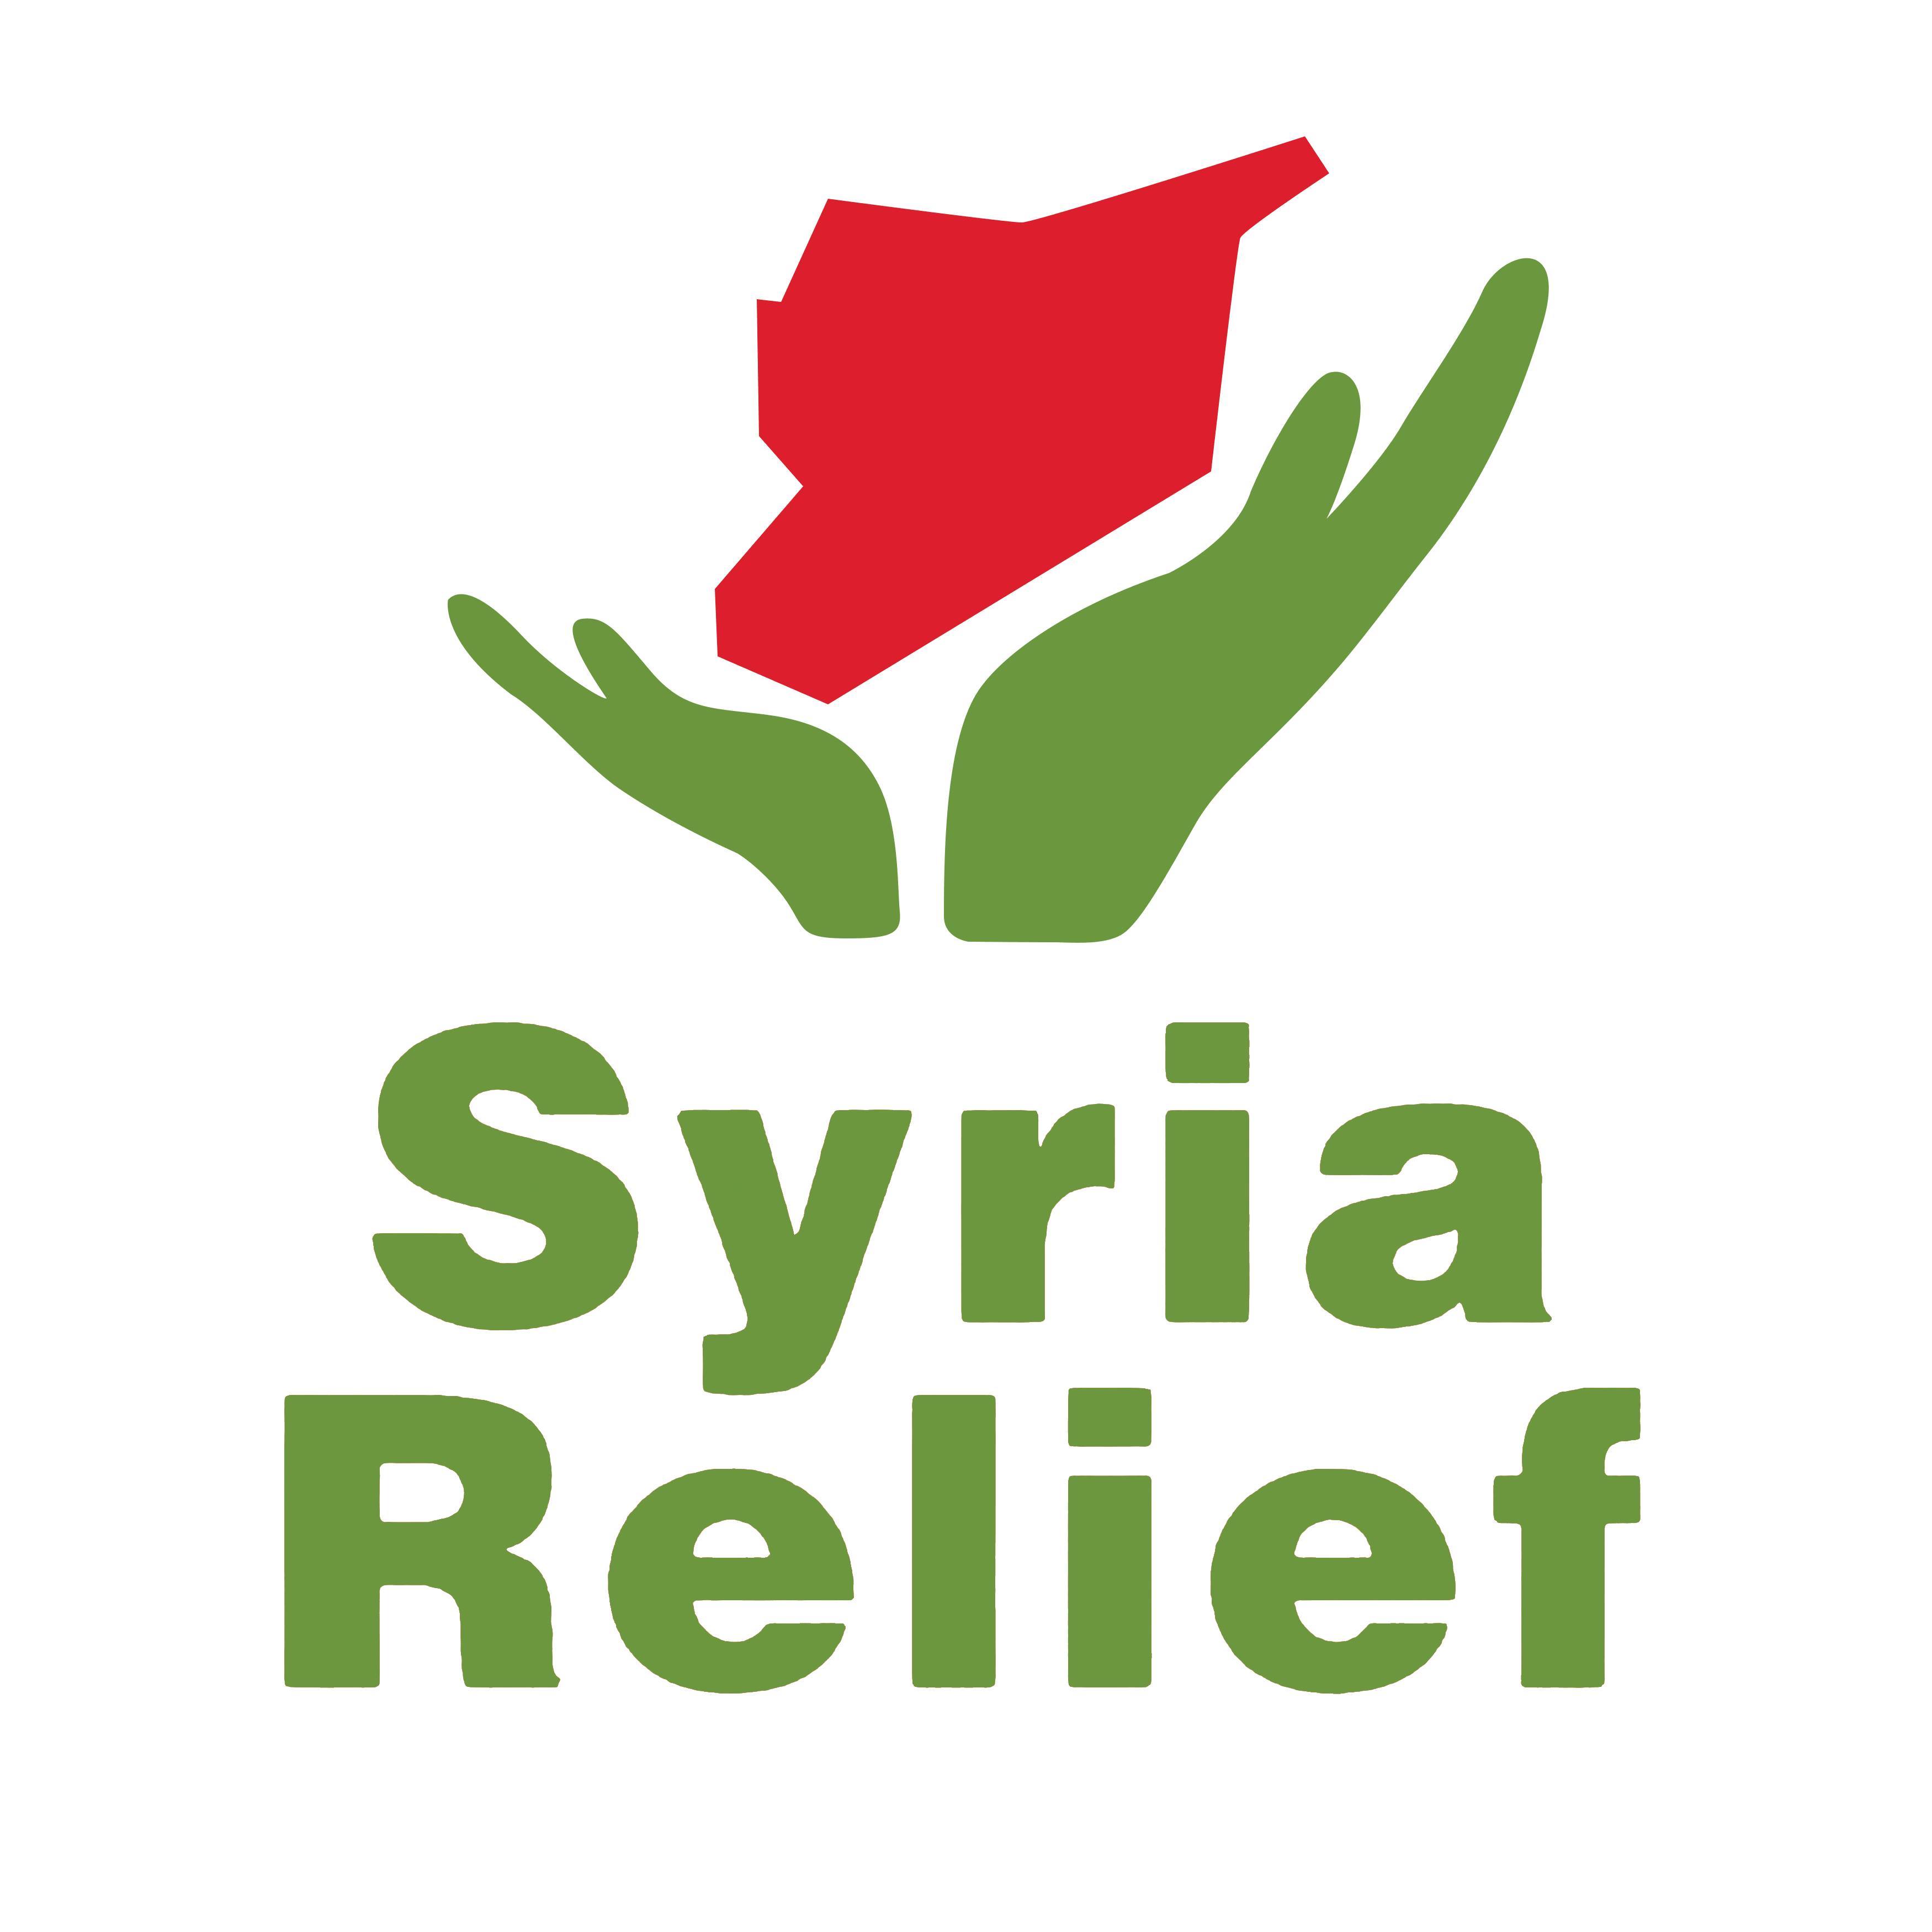 Syria Logo - Syria relief Logos